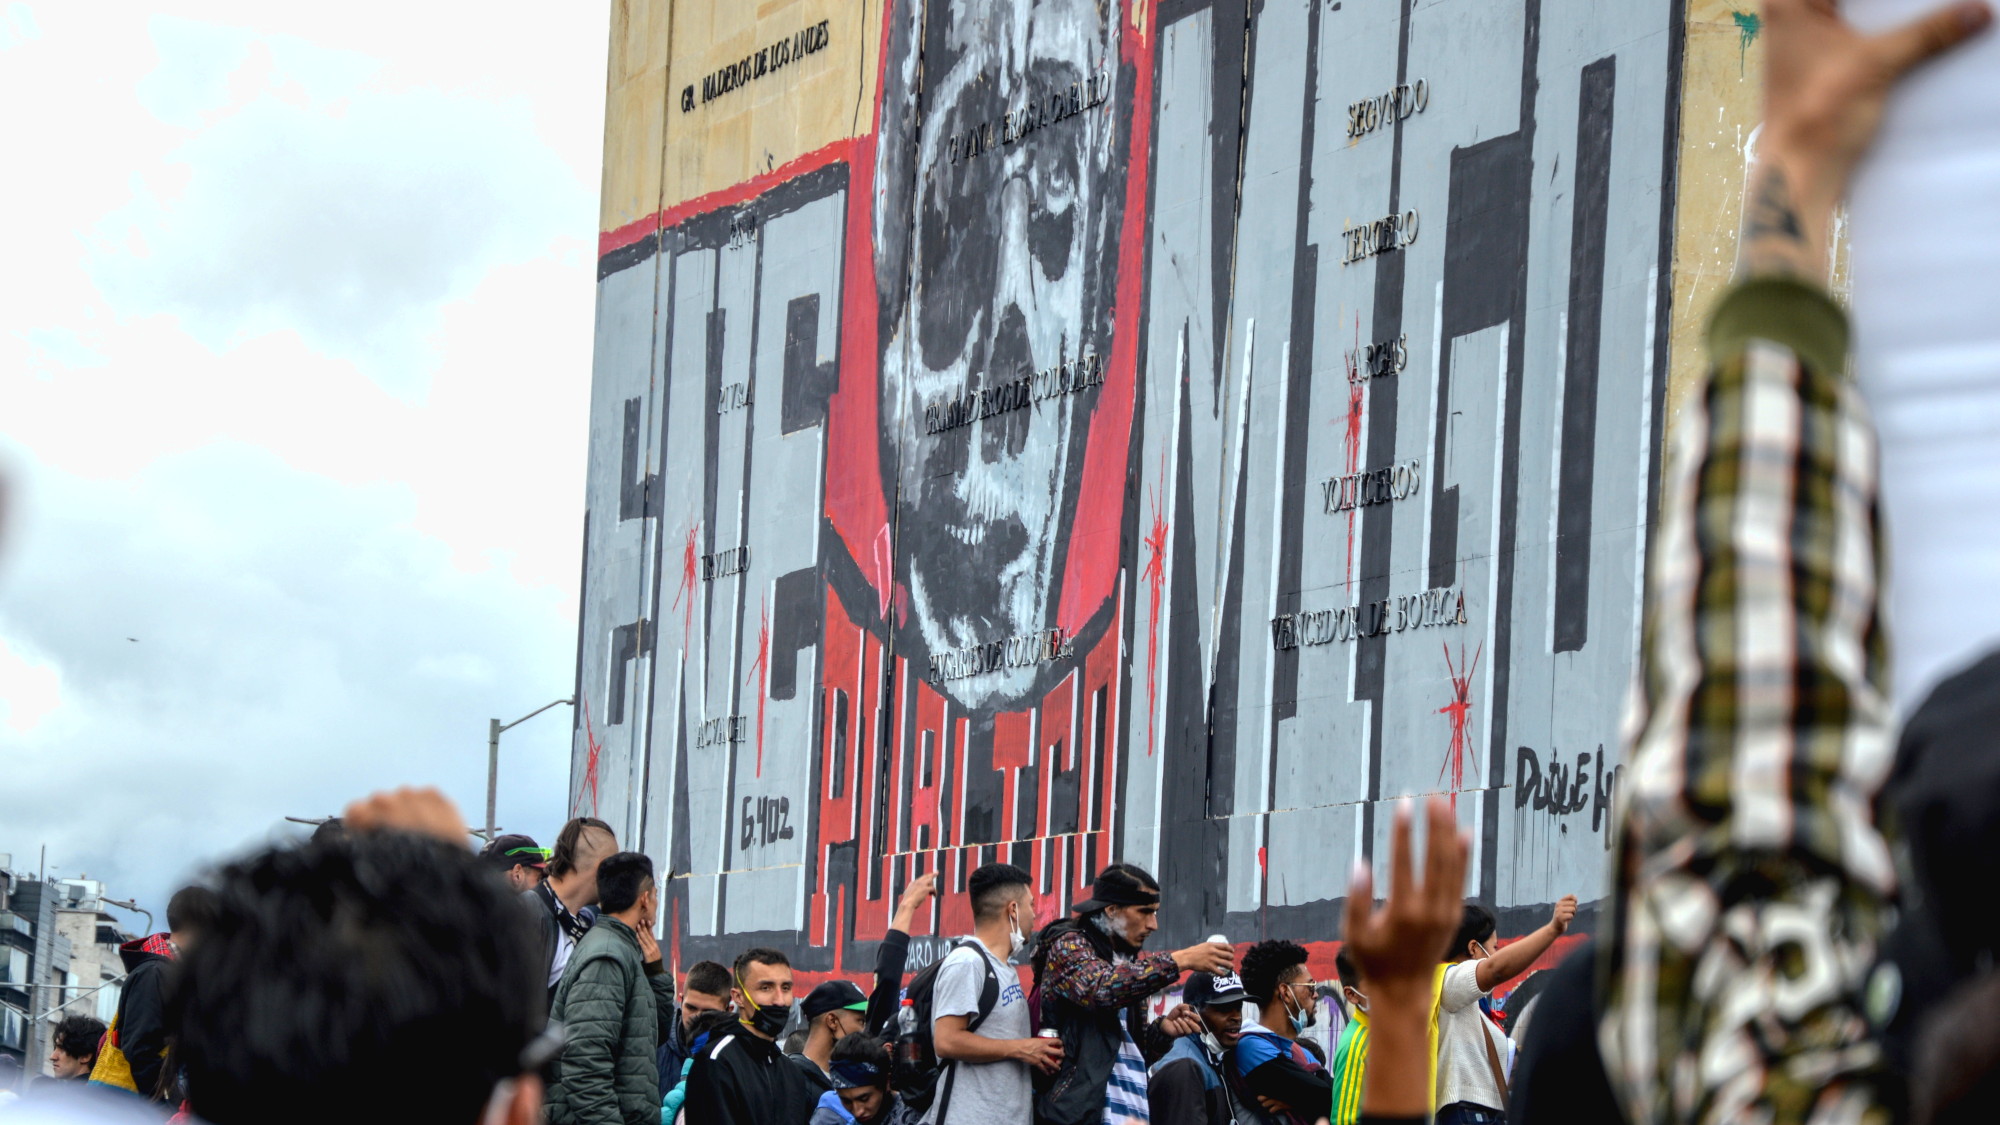 Jóvenes en una protesta junto al antiguo Monumento a los Héroes de Bogotá. Pintada en una de las paredes se lee "enemigo público" bajo una caricatura de Álvaro Uribe que lo muestra como un cráneo con sus facciones. Foto: Andrés Gómez